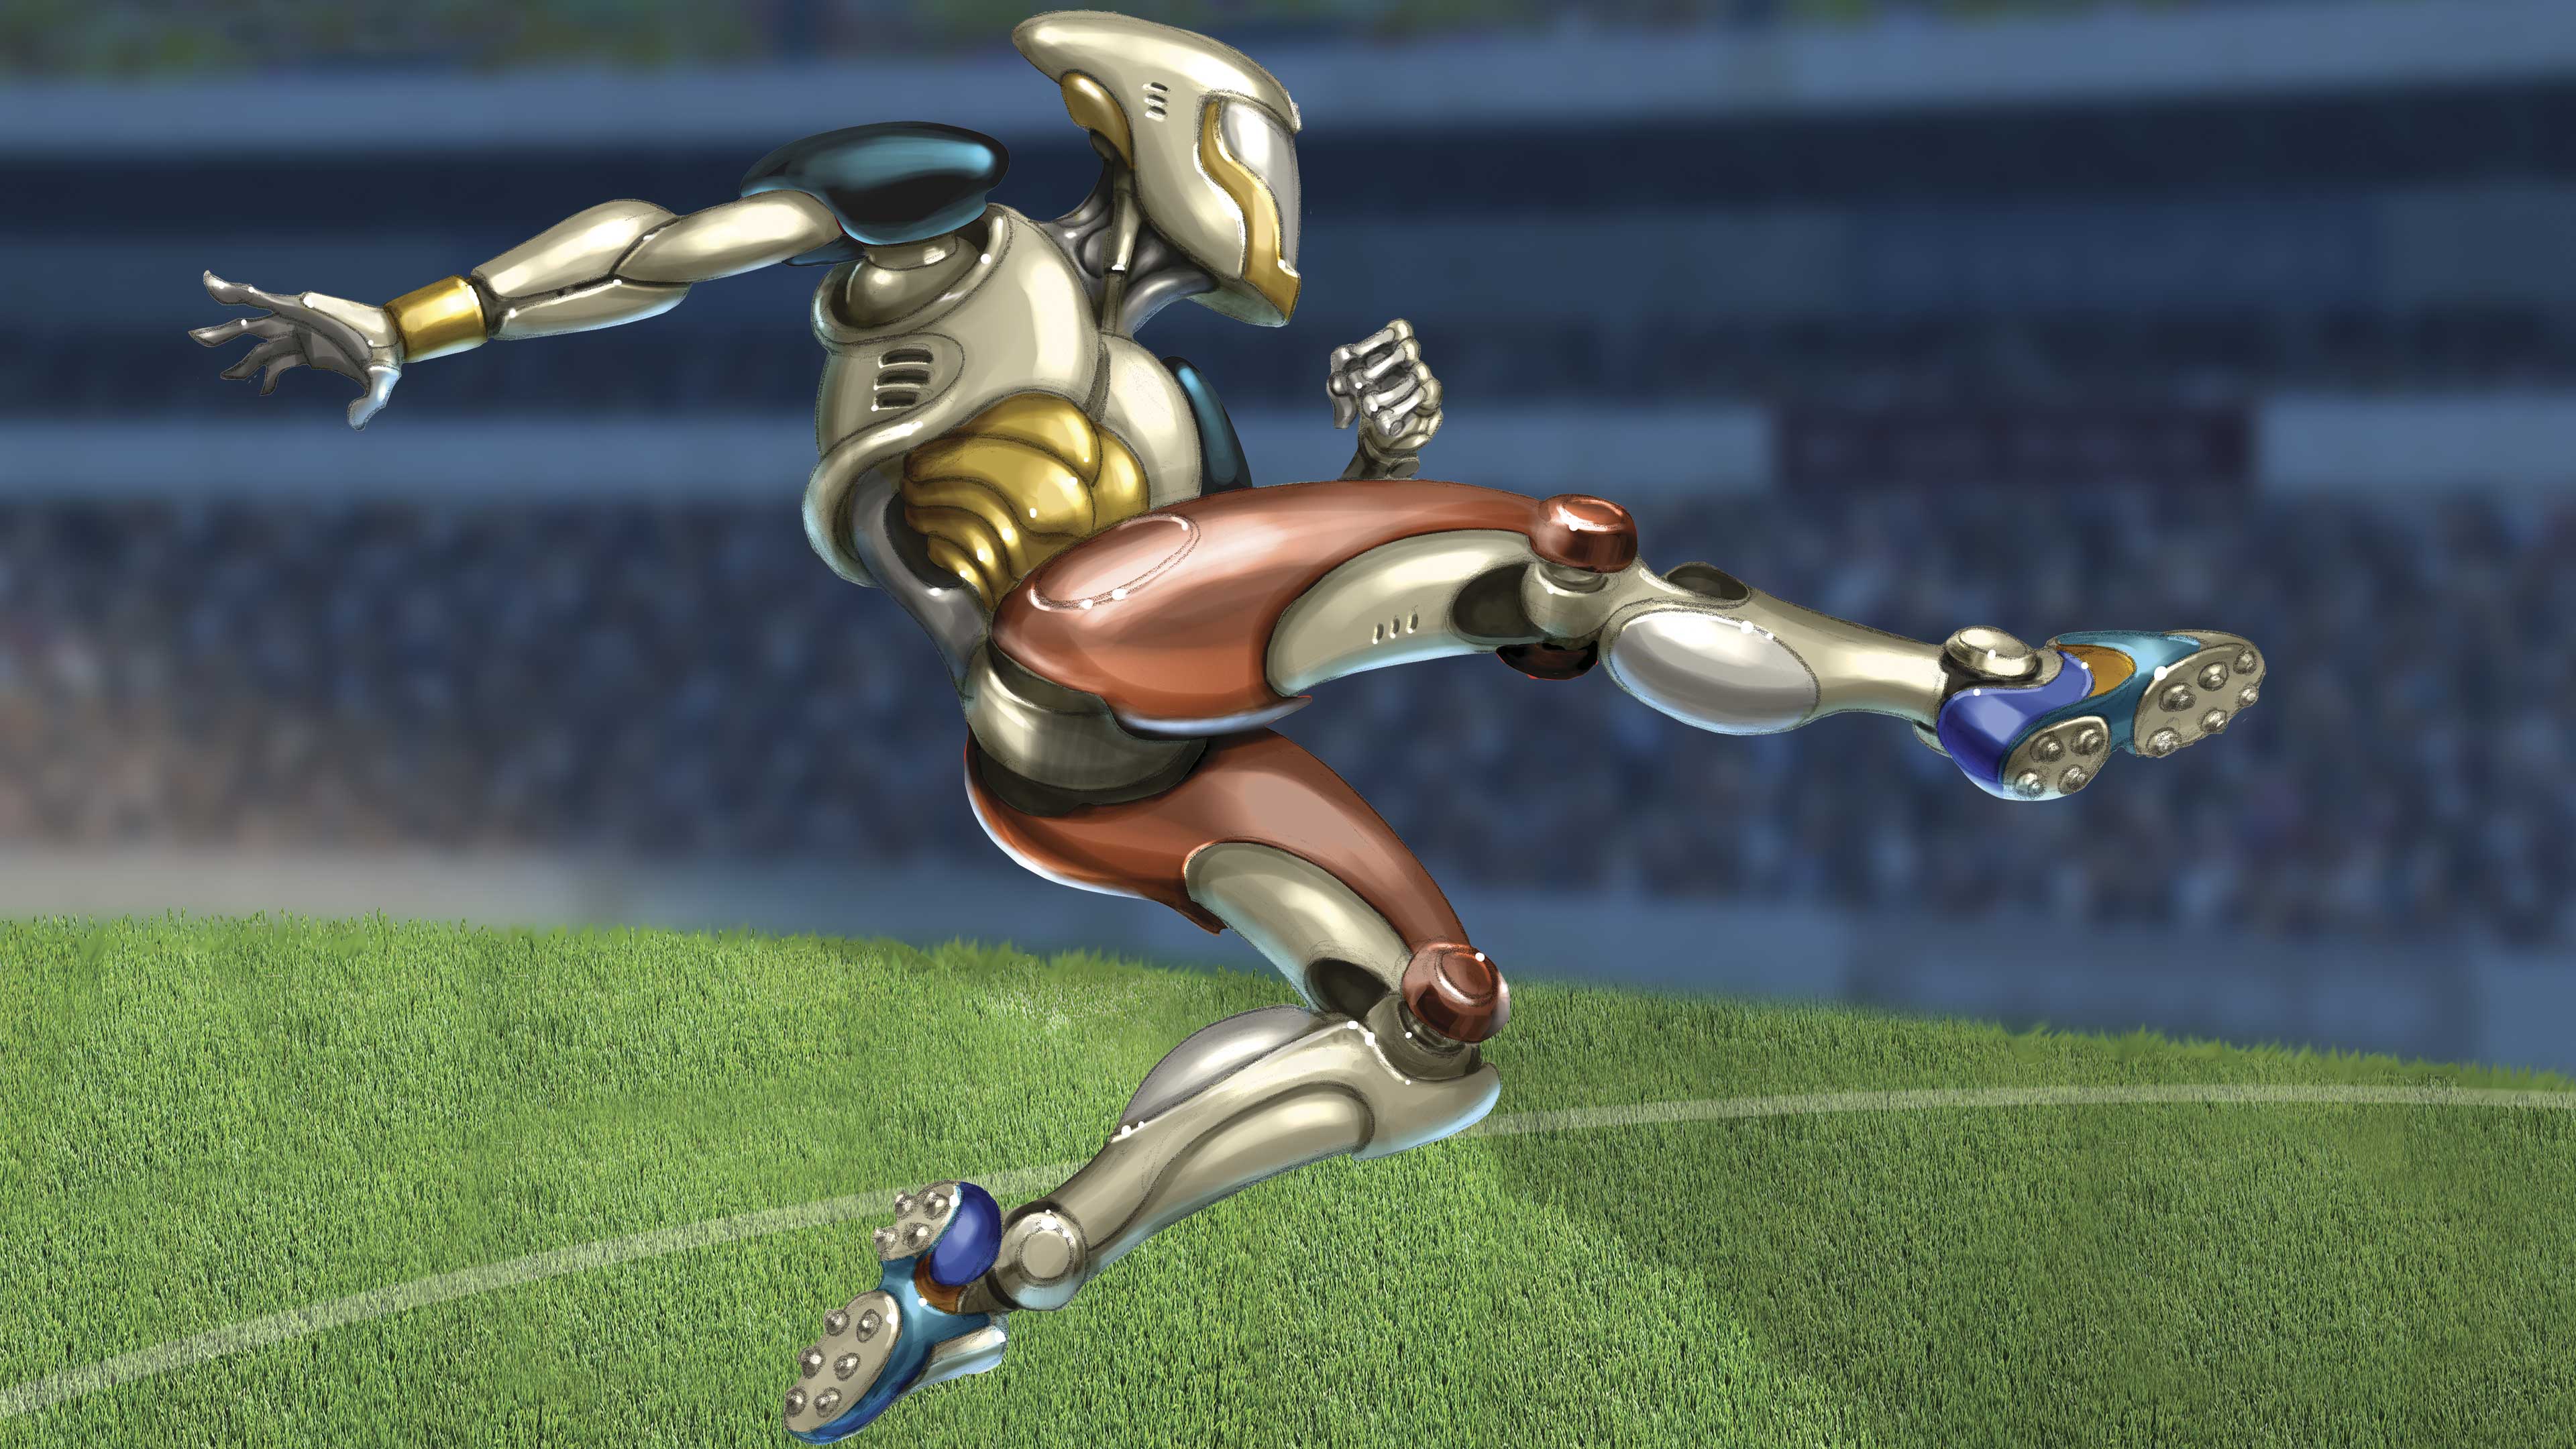 Imagen principal del artículo Robots que juegan al futbol